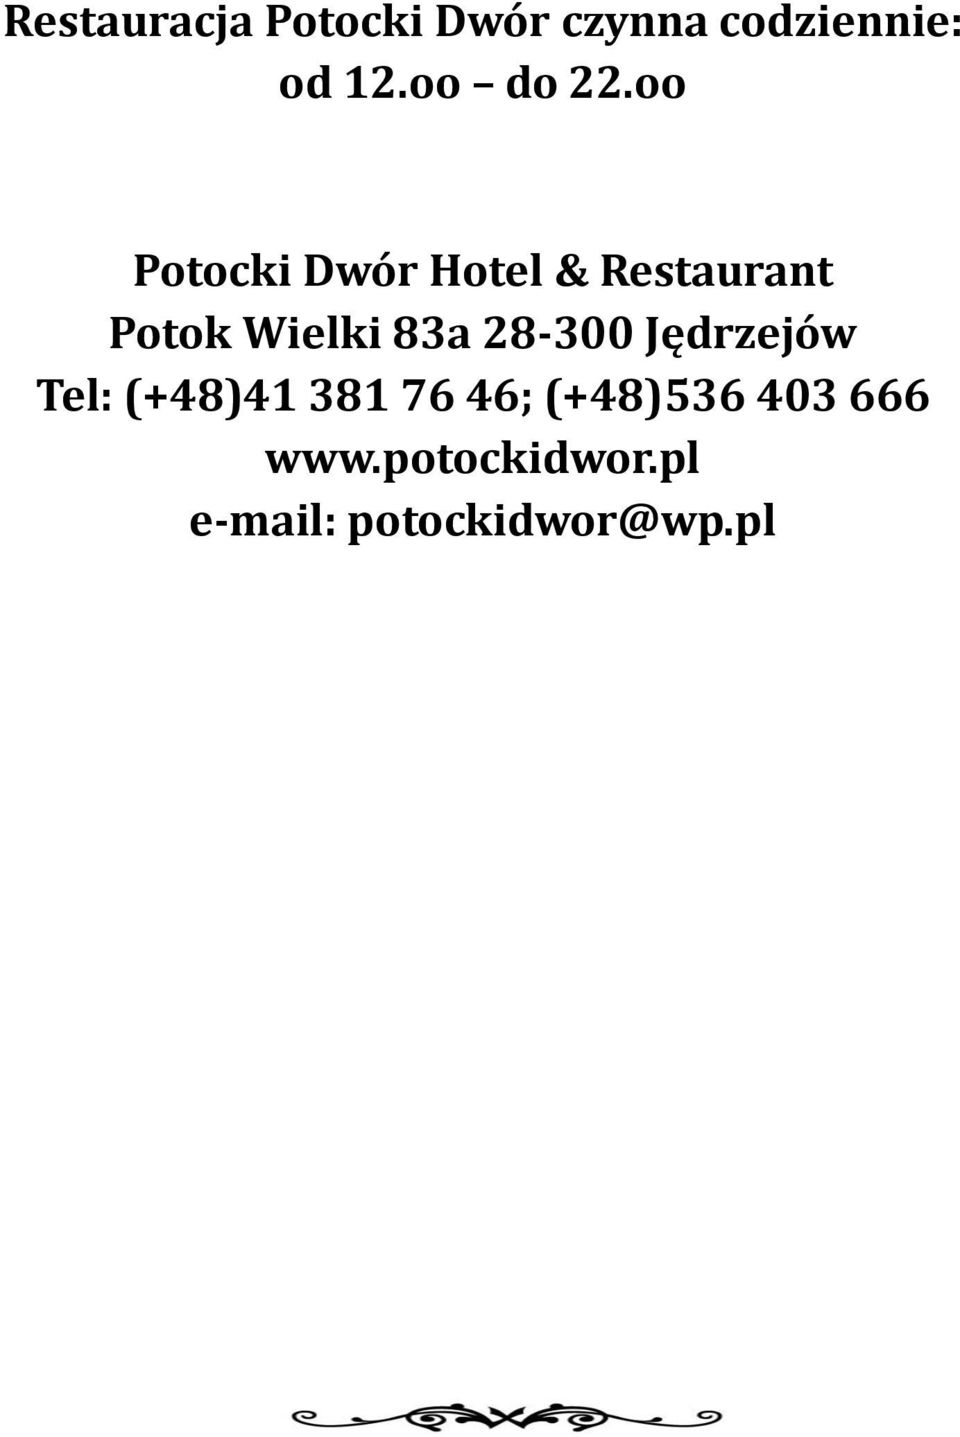 oo Potocki Dwór Hotel & Restaurant Potok Wielki 83a